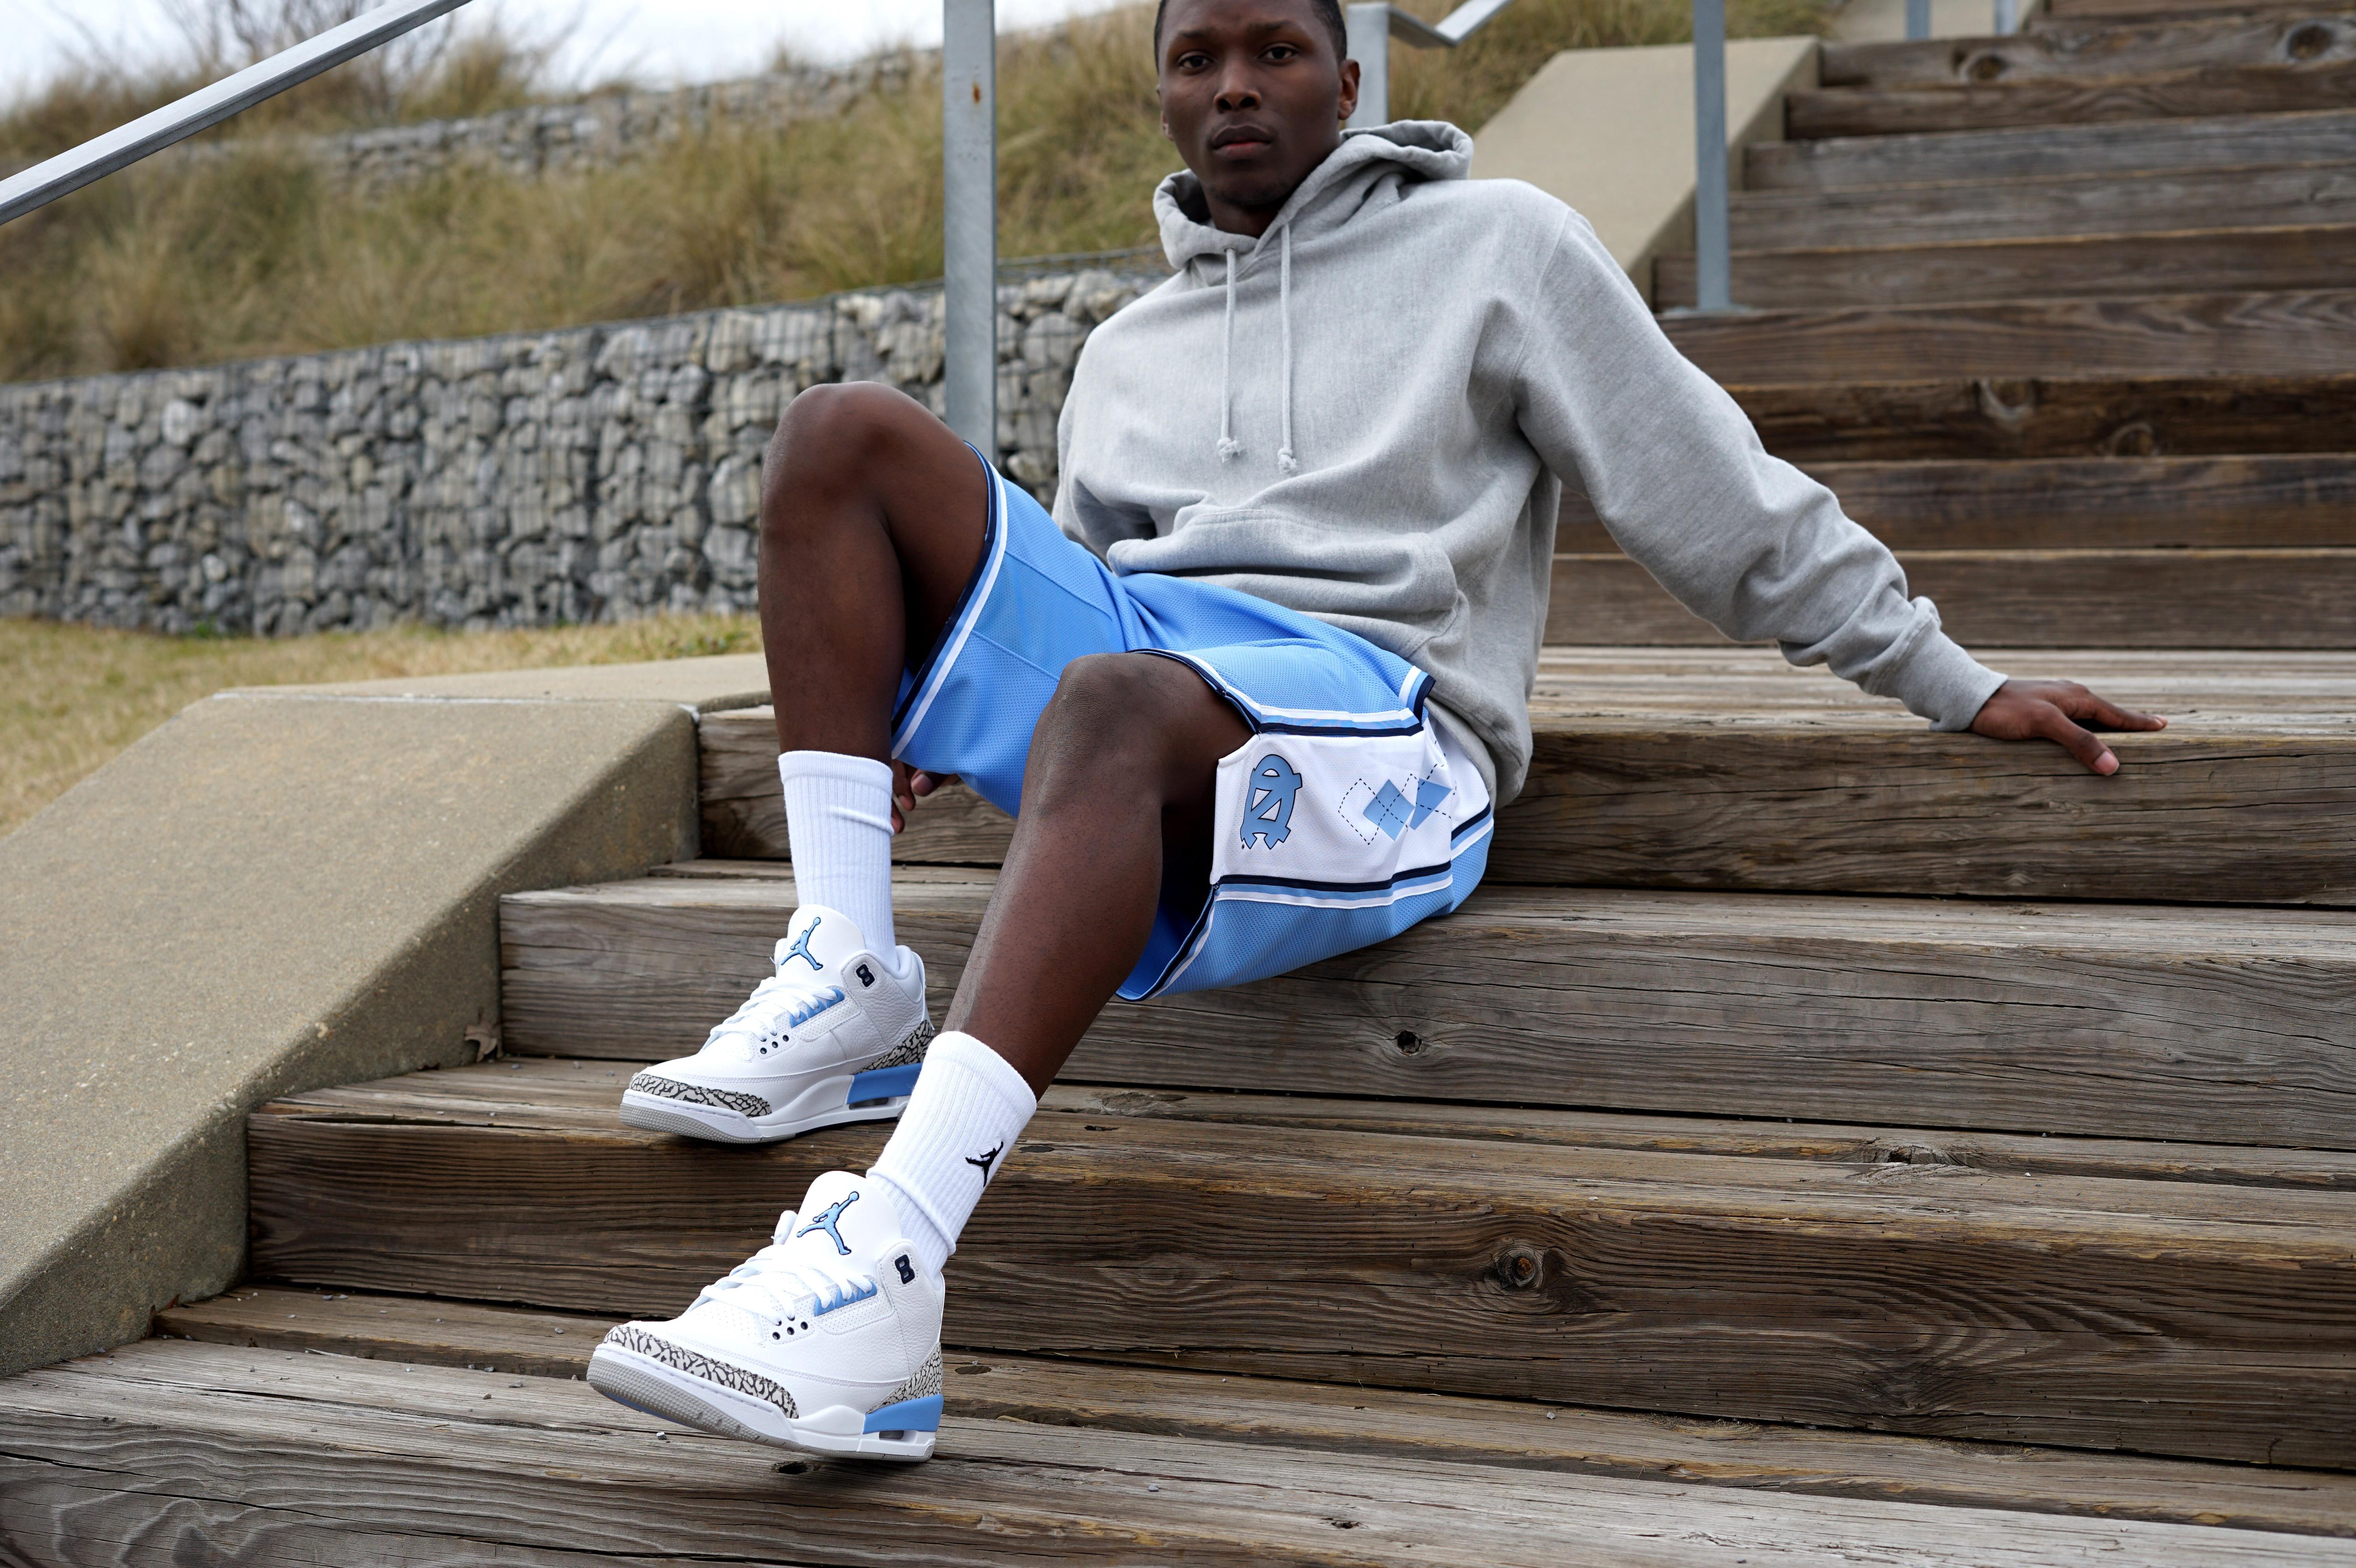 Sneakers Release Jordan 3 Retro Unc White Valor Blue Tech Grey Men S Shoe